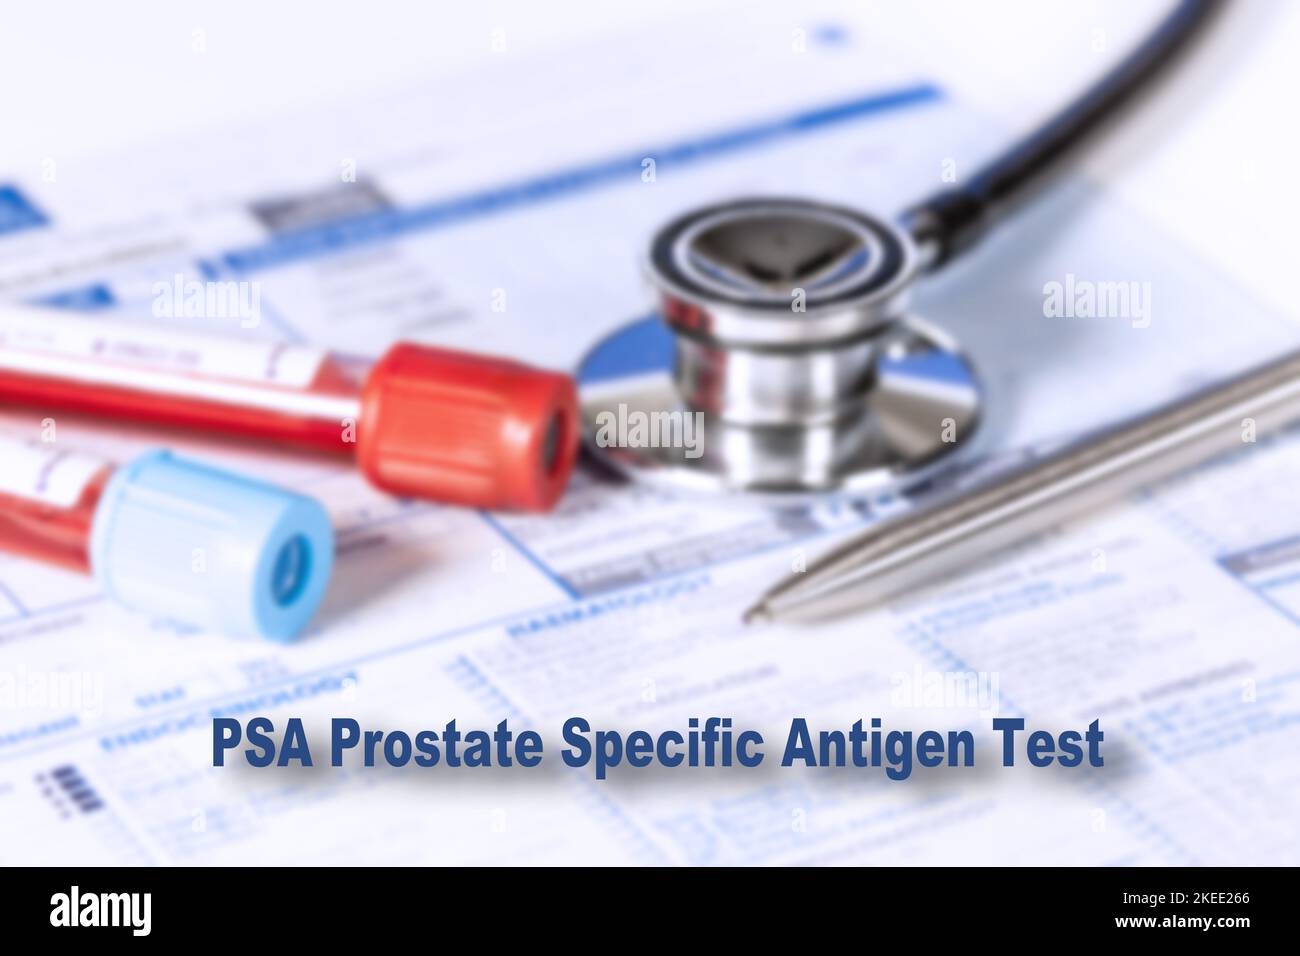 Test d'antigène spécifique de la prostate, image conceptuelle Banque D'Images